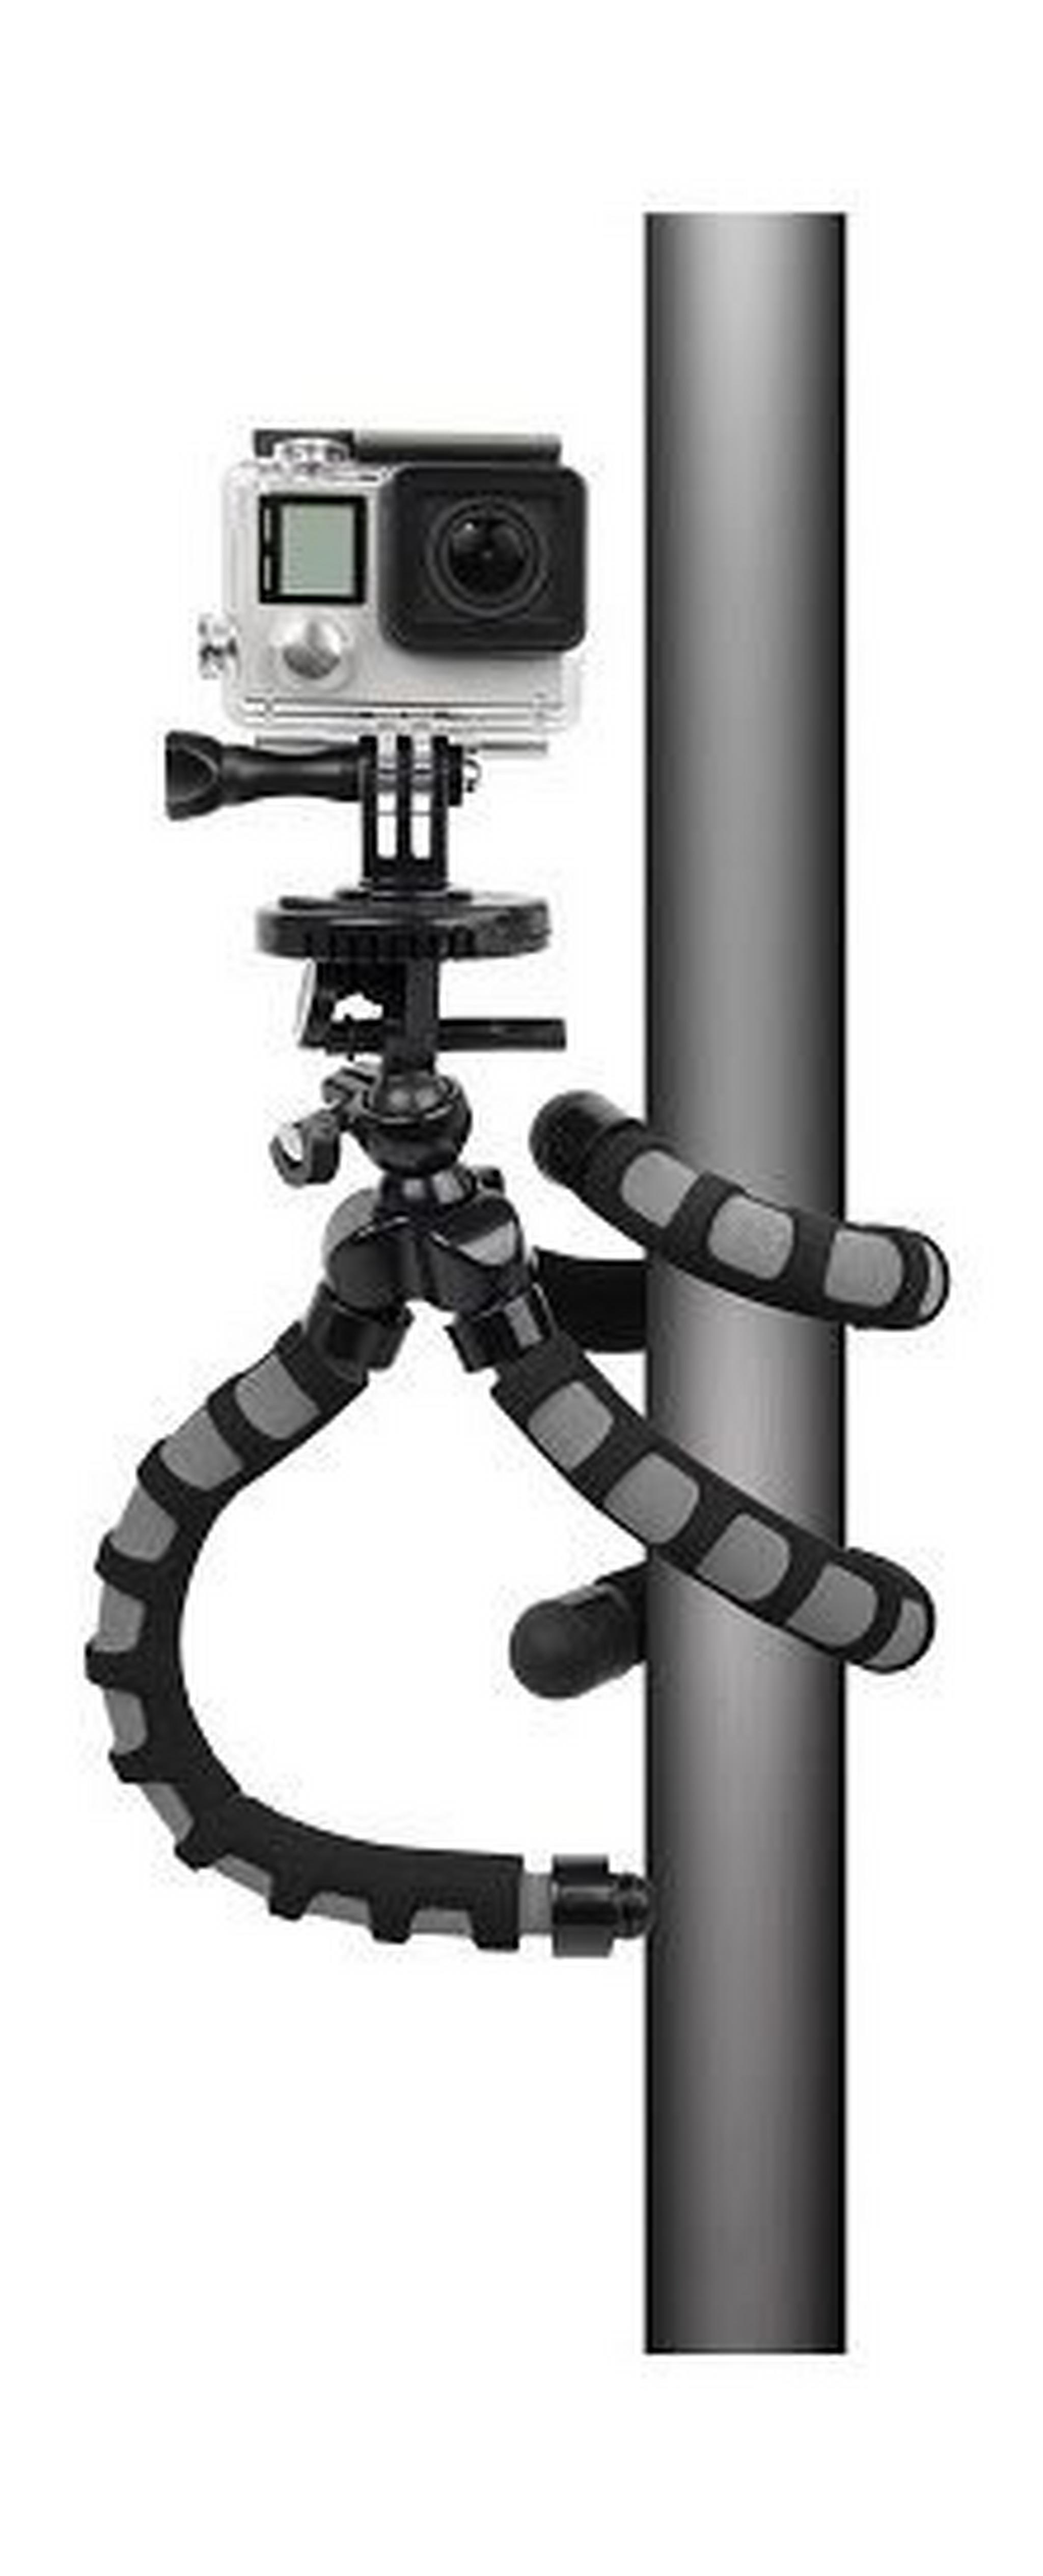 حامل ثلاثي مرن سلسلة إكستريم أكشن لكاميرا جو برو من باور – أسود (XAS-BPG)